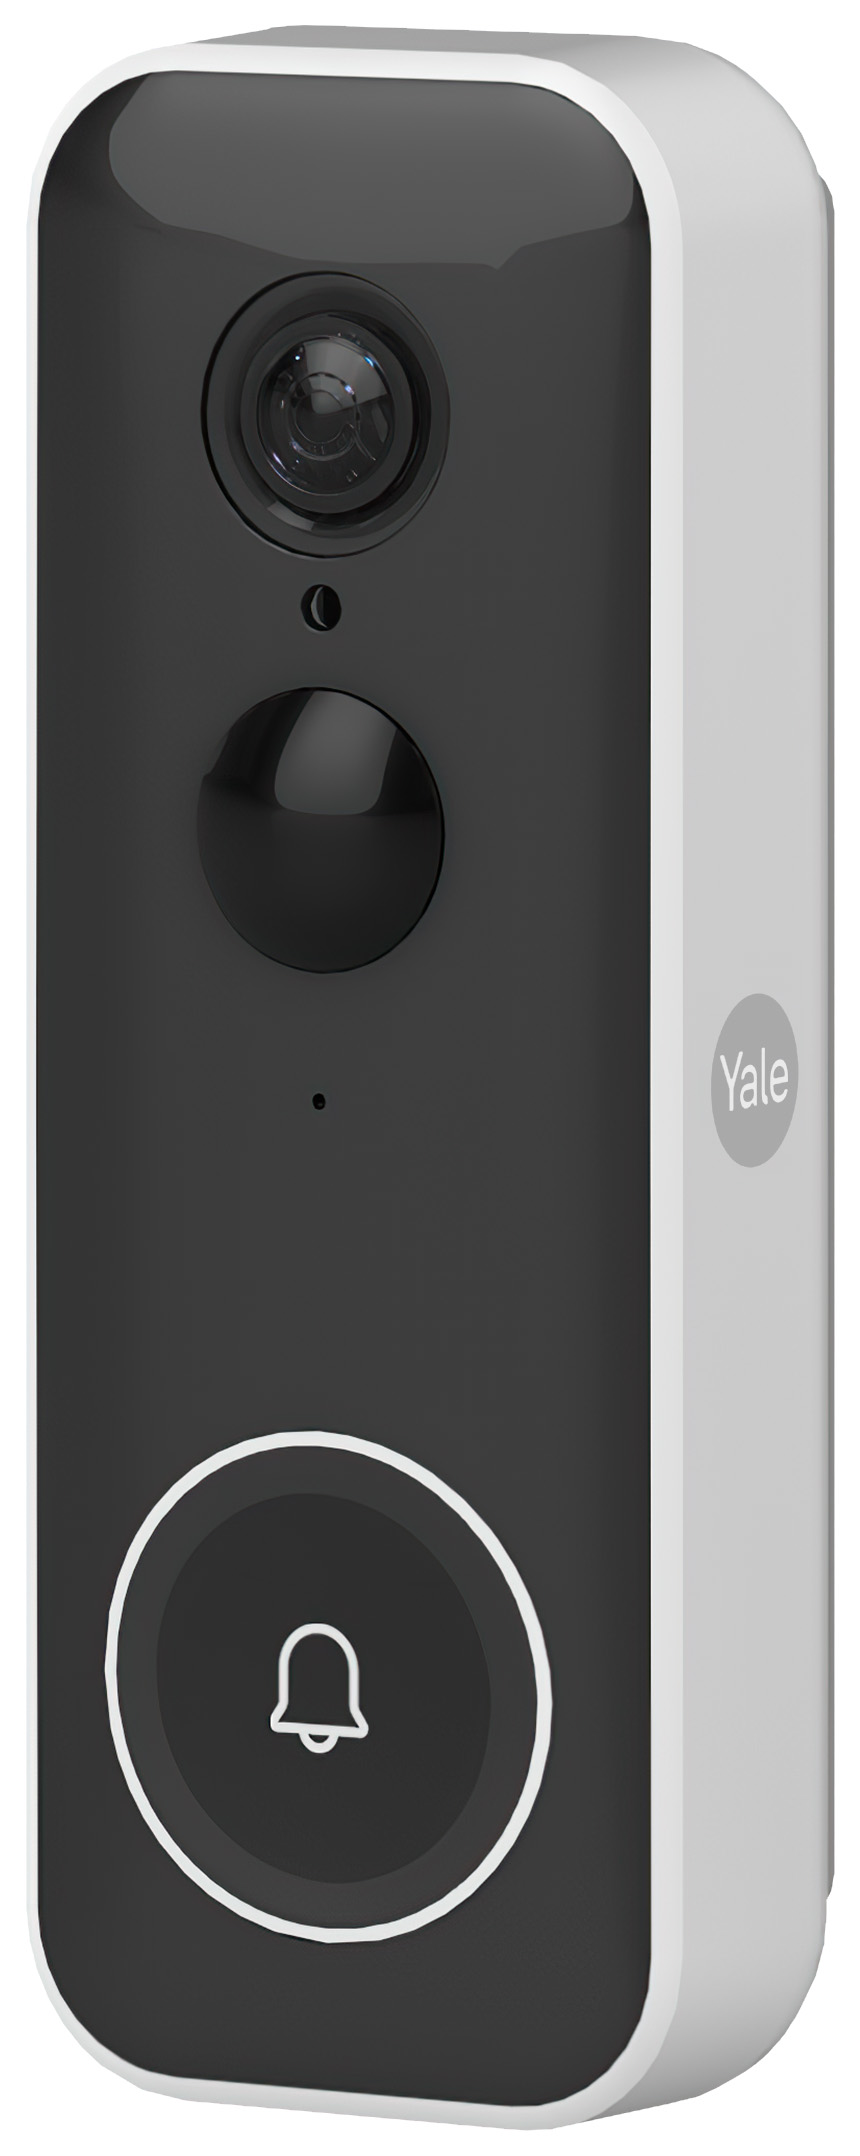 Yale Smart Video Doorbell - Black